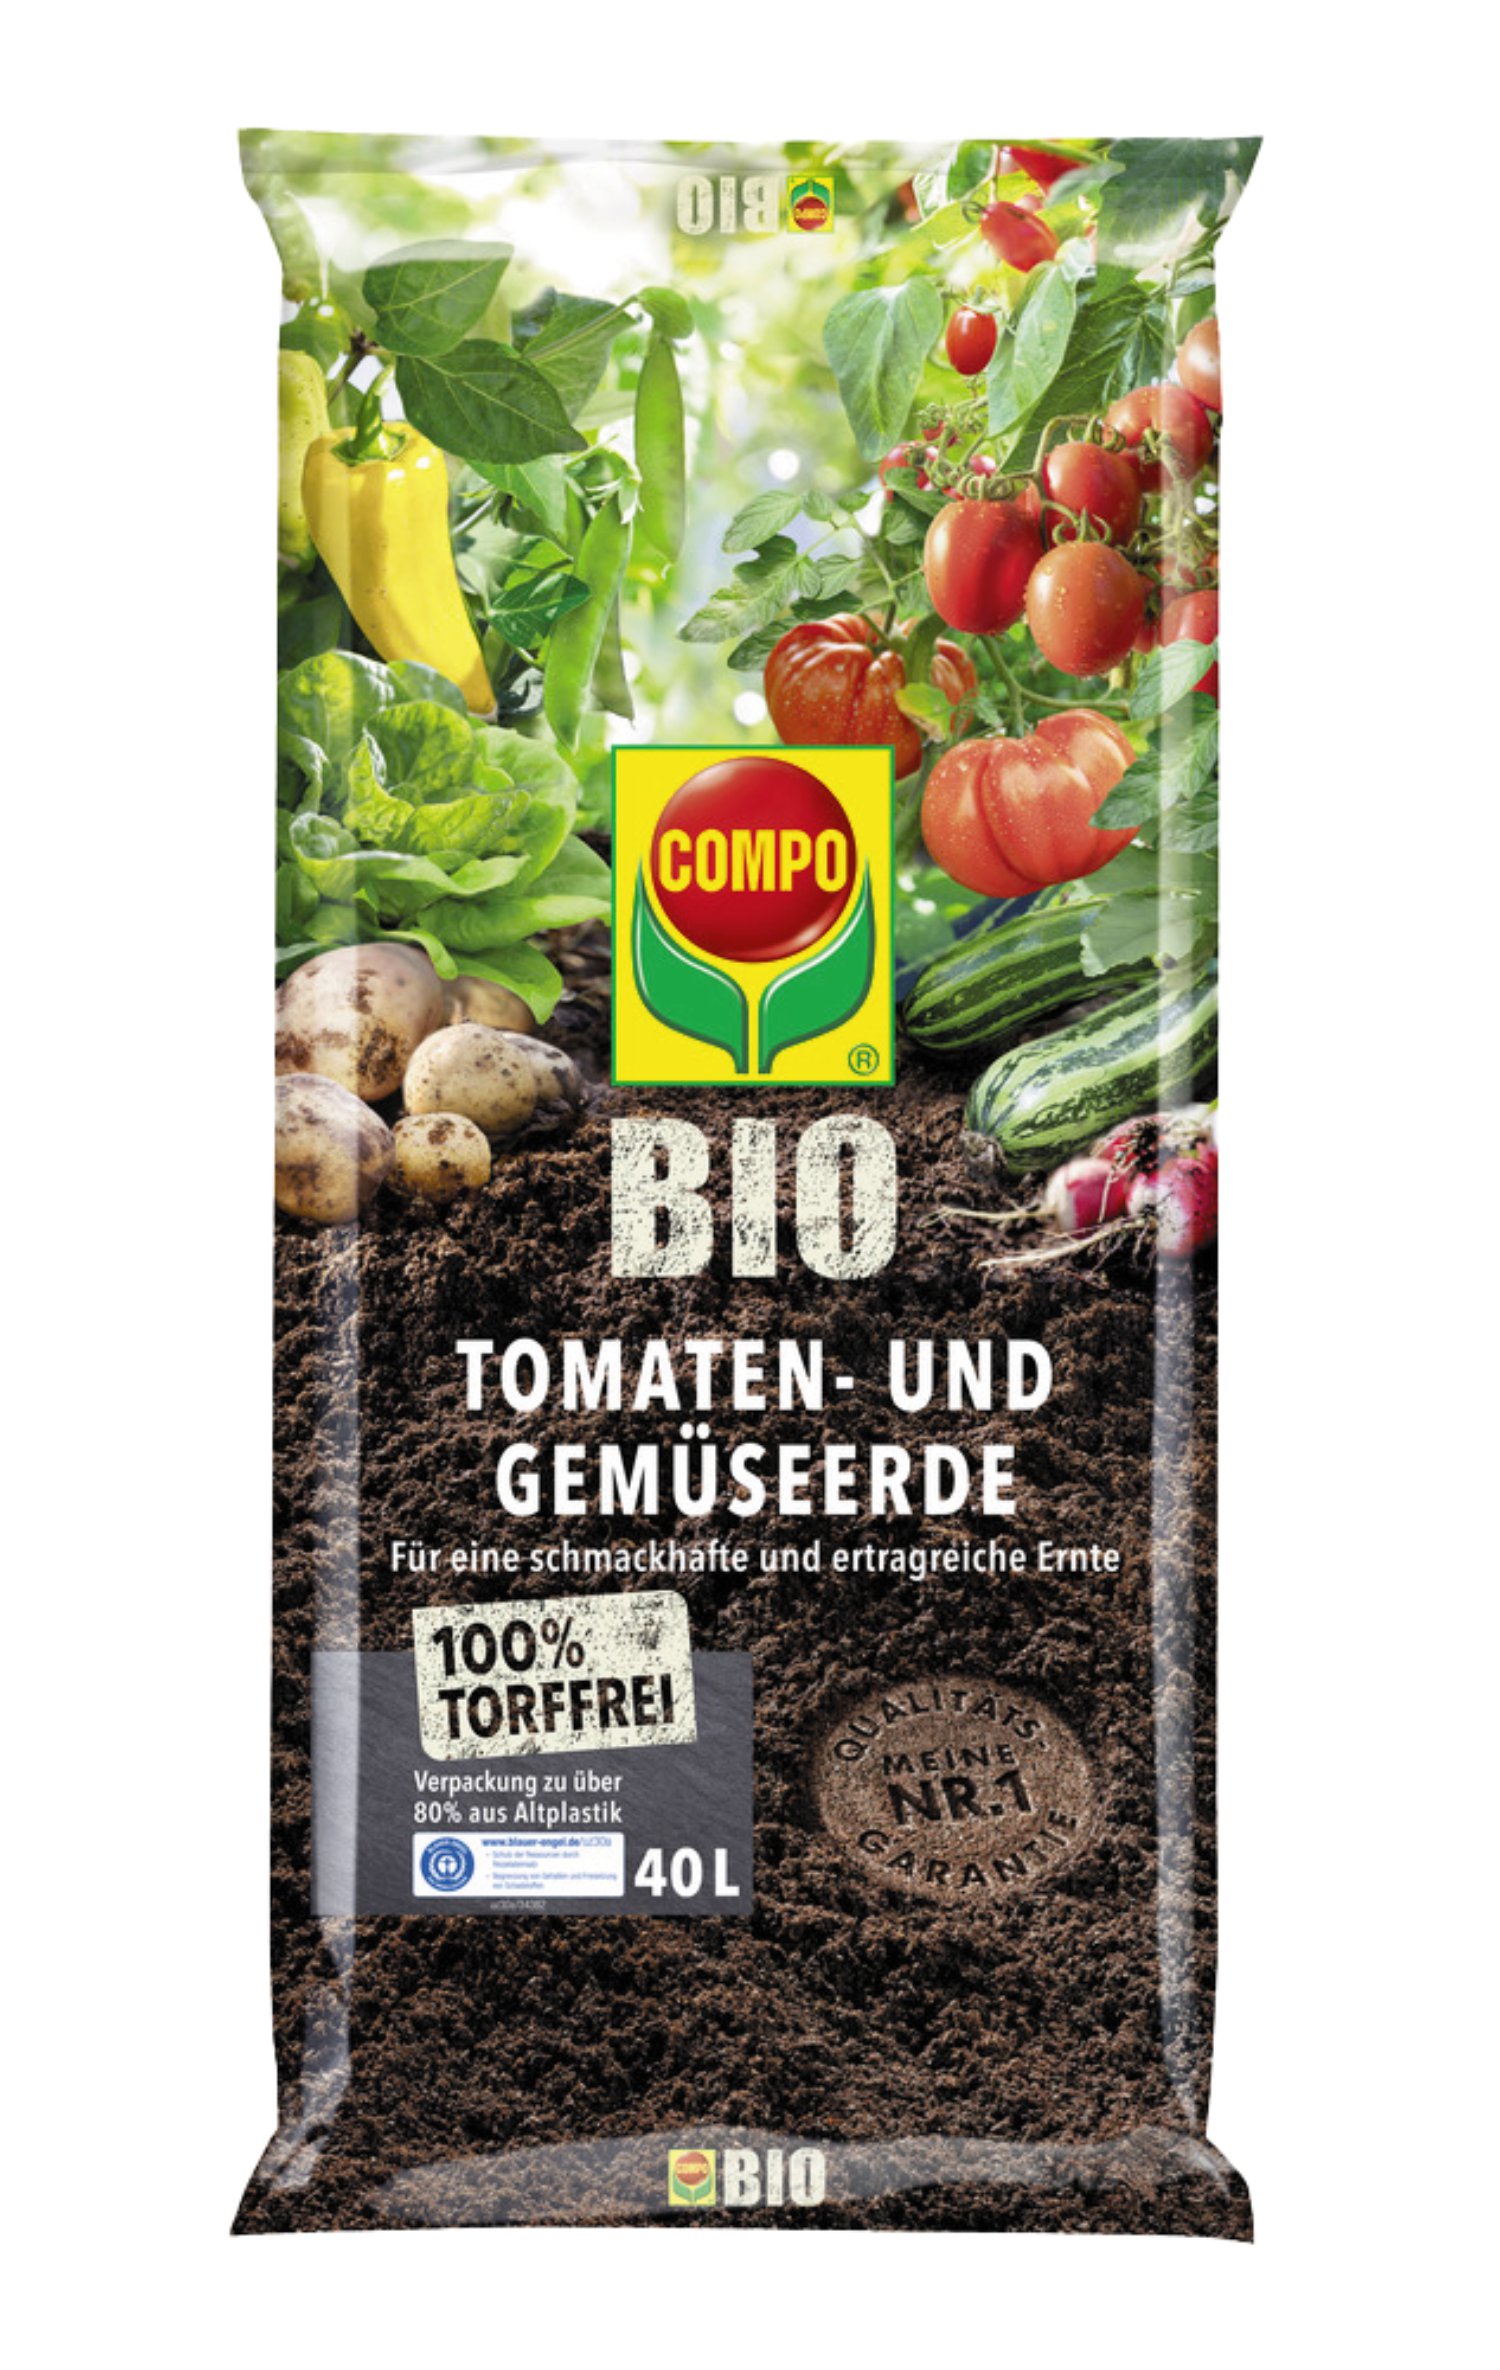 COMPO® Bio Tomaten- und Gemüseerde Torffrei 40 l